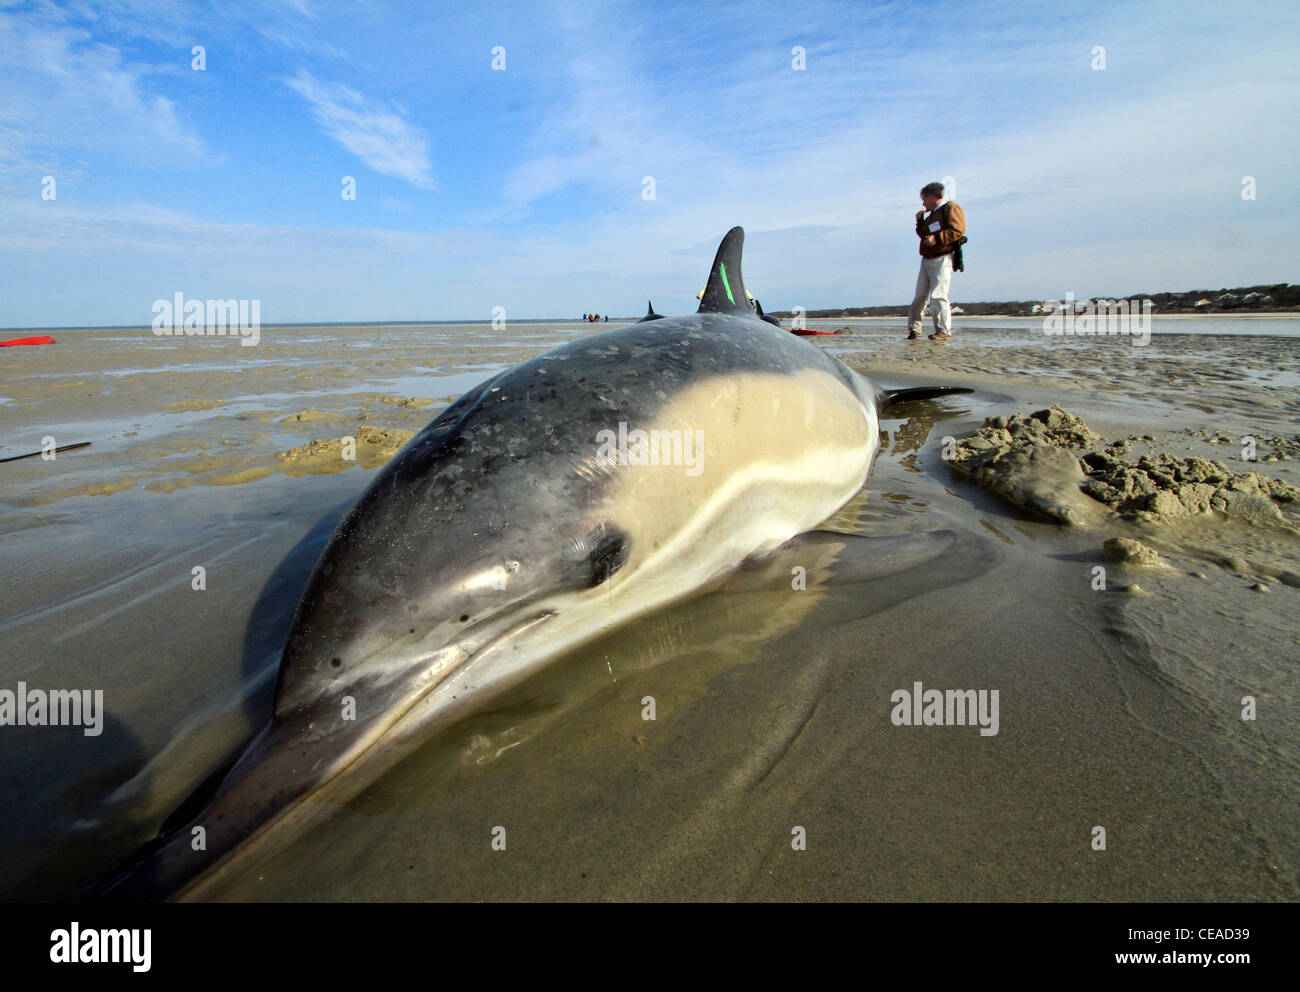 Les dauphins échoués sauvés sur une plage de Cape Cod, Massachusetts dans Brewster. Le Cap d'échouages de dauphins sont en place cet hiver. Banque D'Images